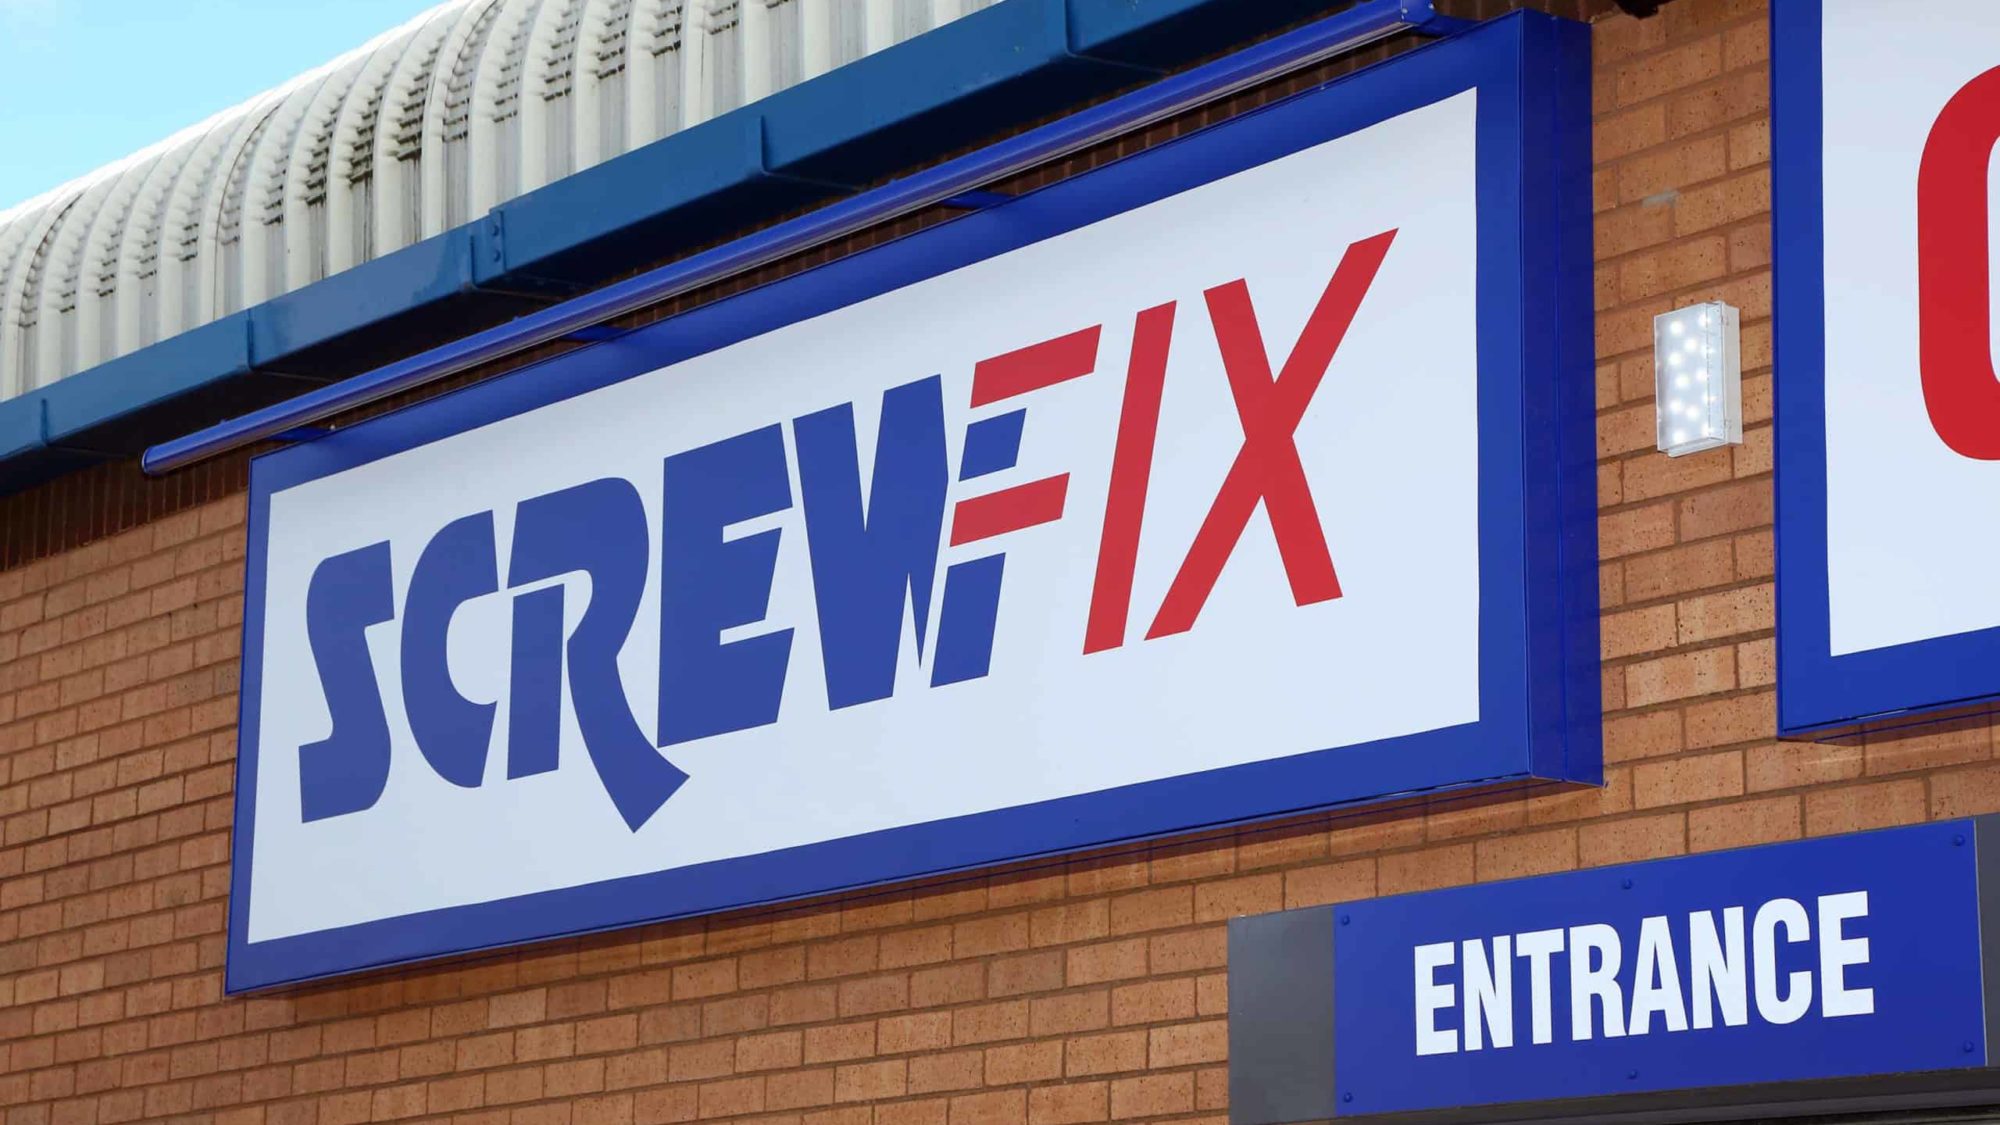 Screwfix sales up 15.4 per cent